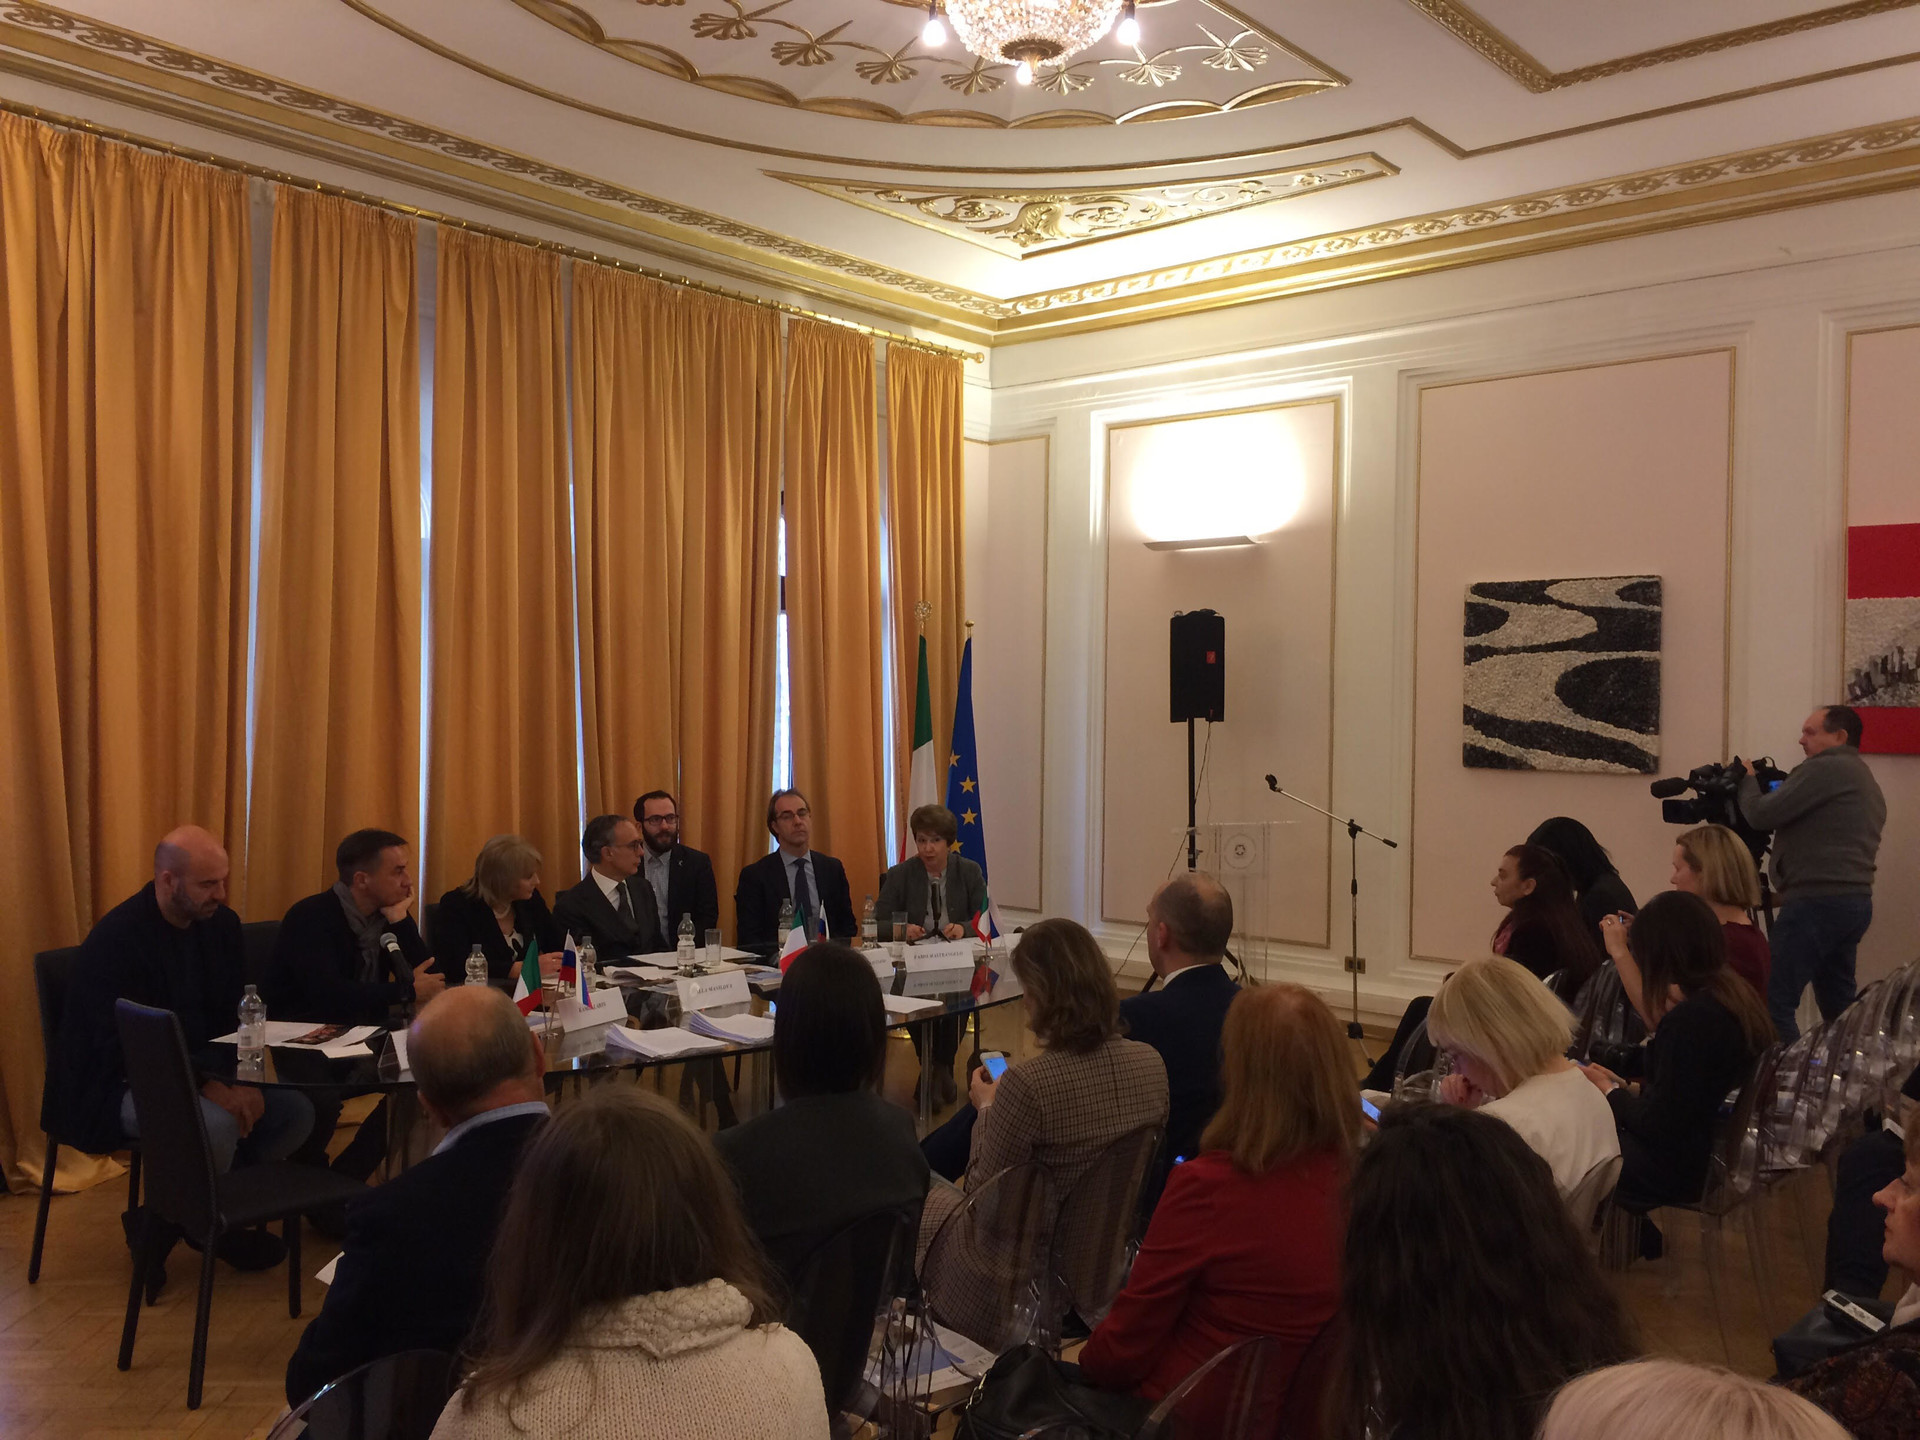 Un momento della conferenza stampa di presentazione organizzata nella sede dell'Ambasciata italiana a Mosca